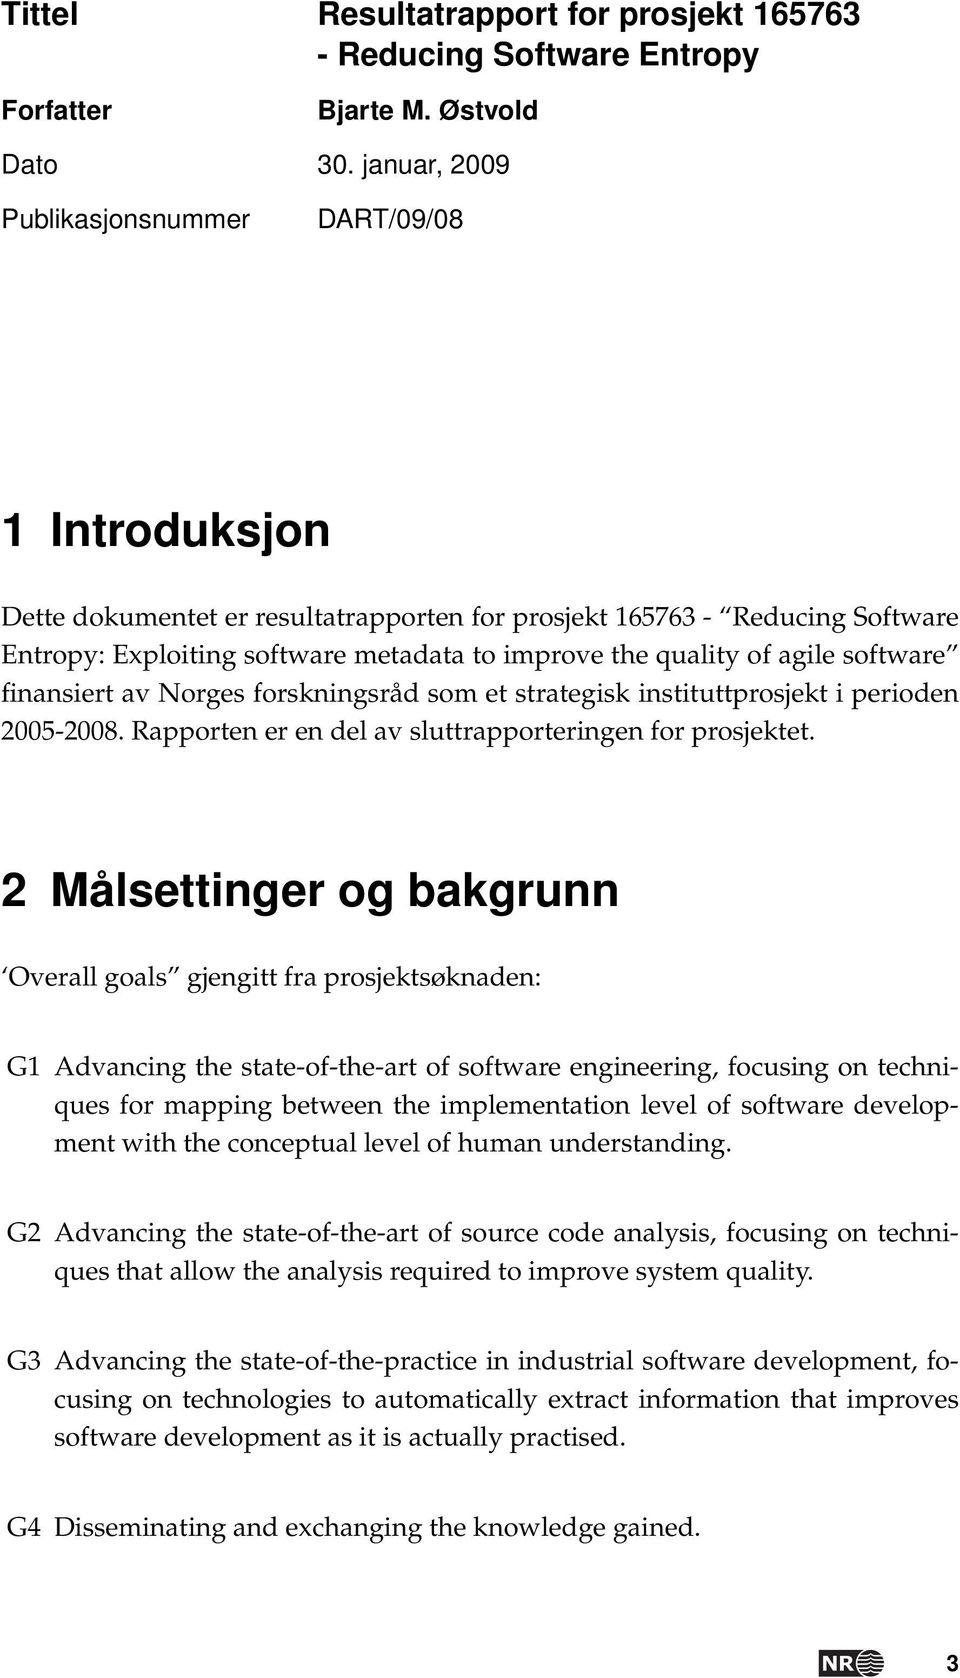 agile software finansiert av Norges forskningsråd som et strategisk instituttprosjekt i perioden 2005-2008. Rapporten er en del av sluttrapporteringen for prosjektet.